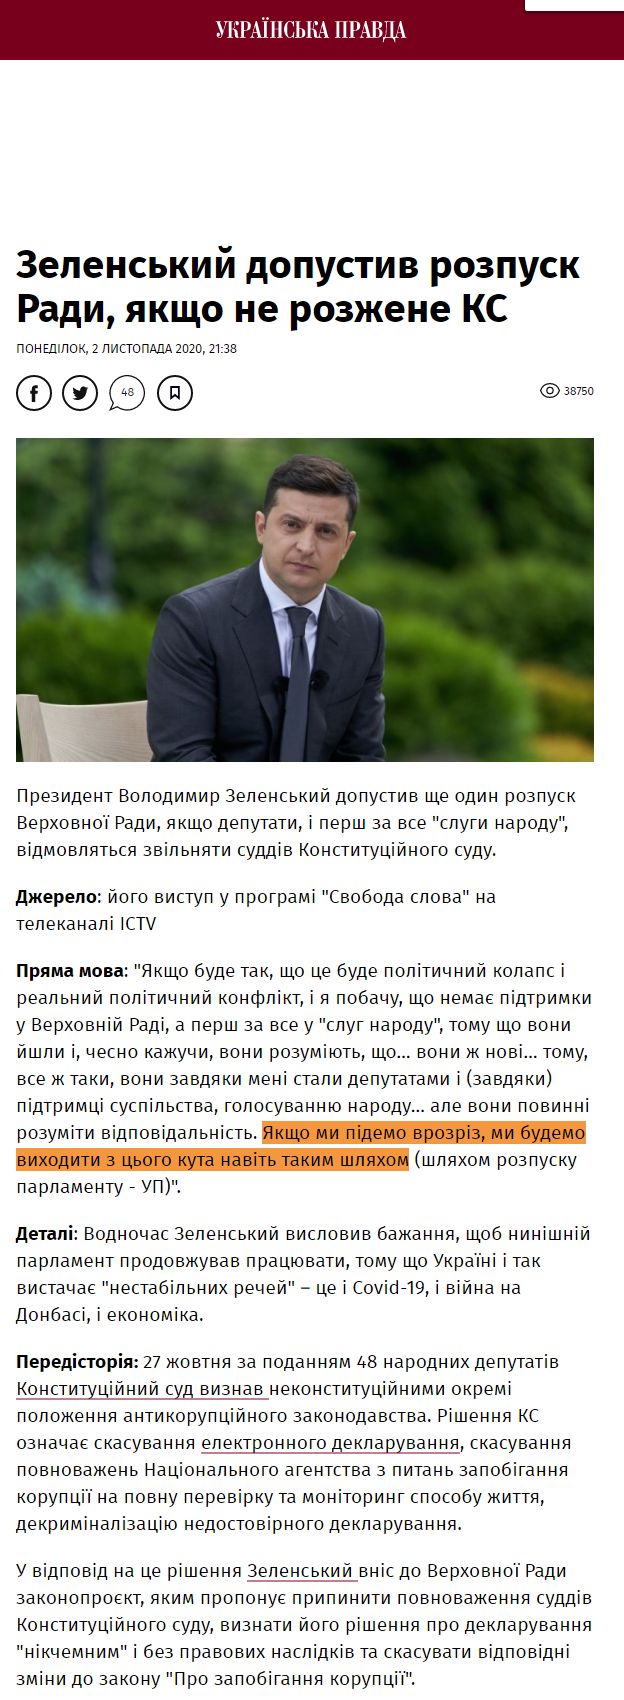 https://www.pravda.com.ua/news/2020/11/2/7272144/